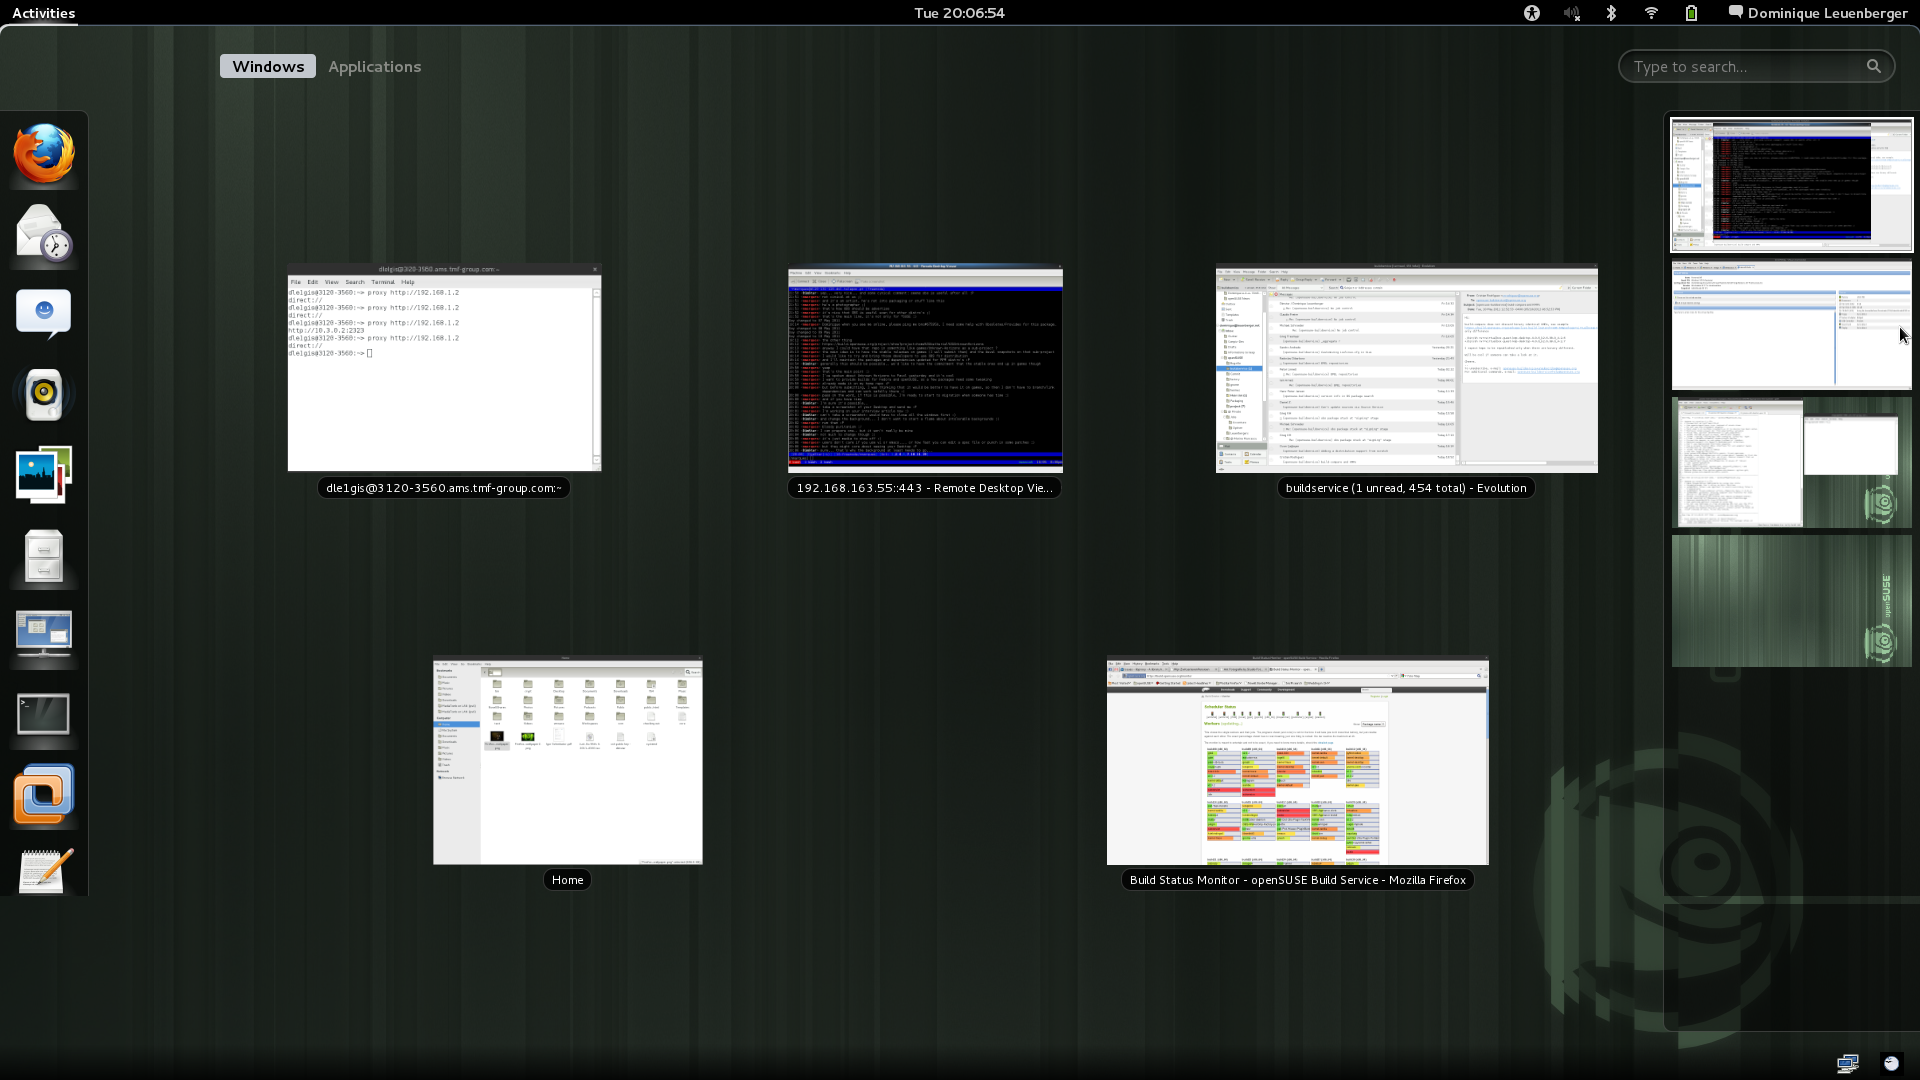 Dimstar's GNOME3 Desktop (openSUSE 11.4).